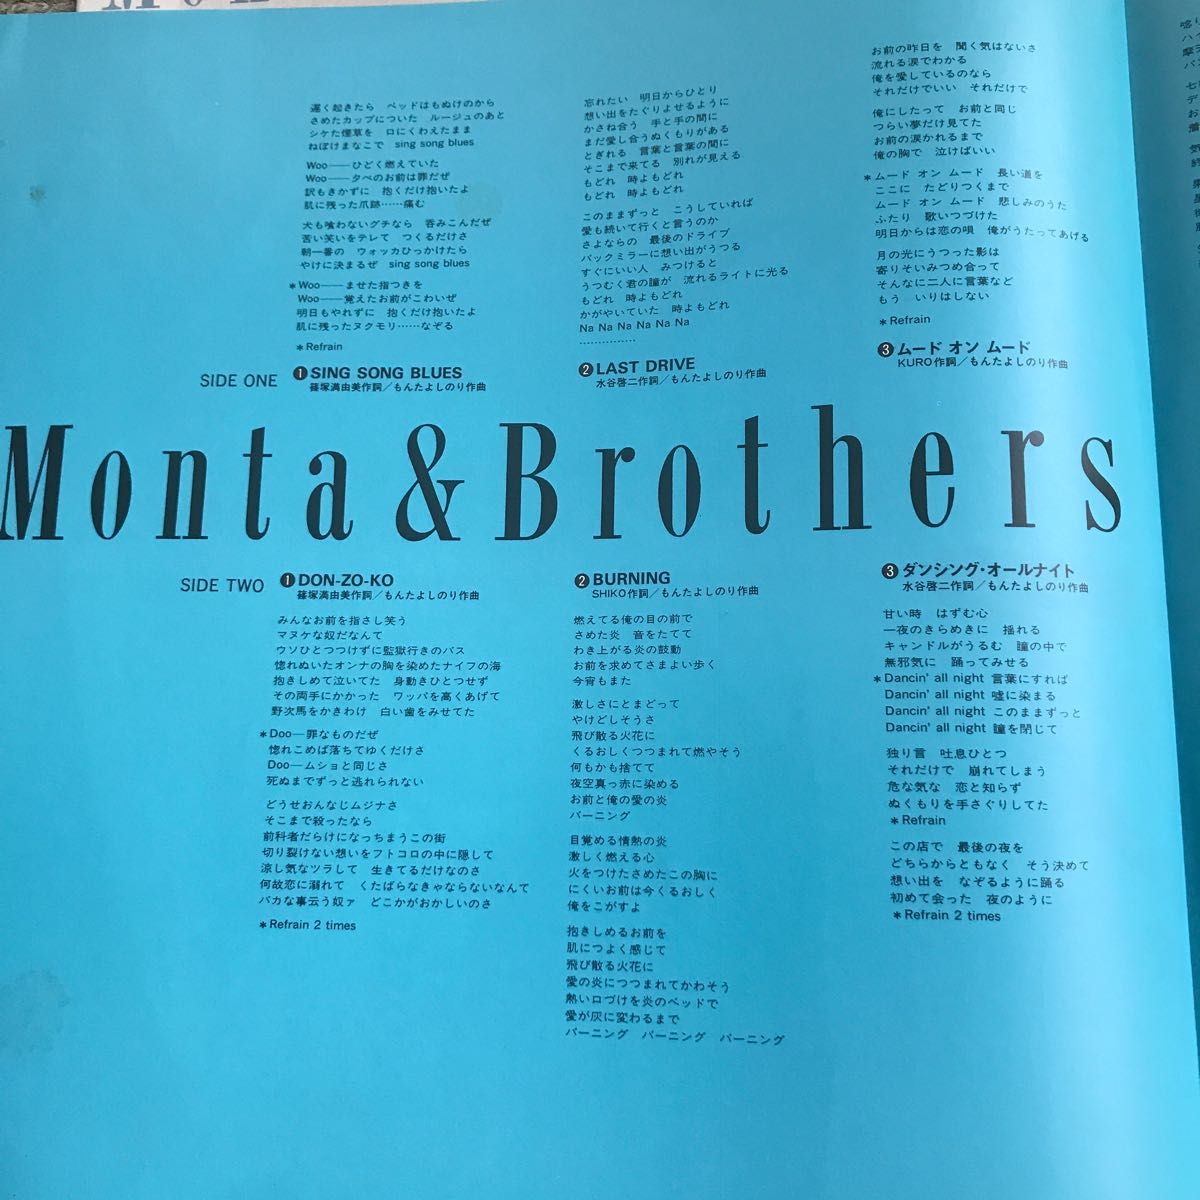 Monta & brothers ACT1レコード 初回限定盤  